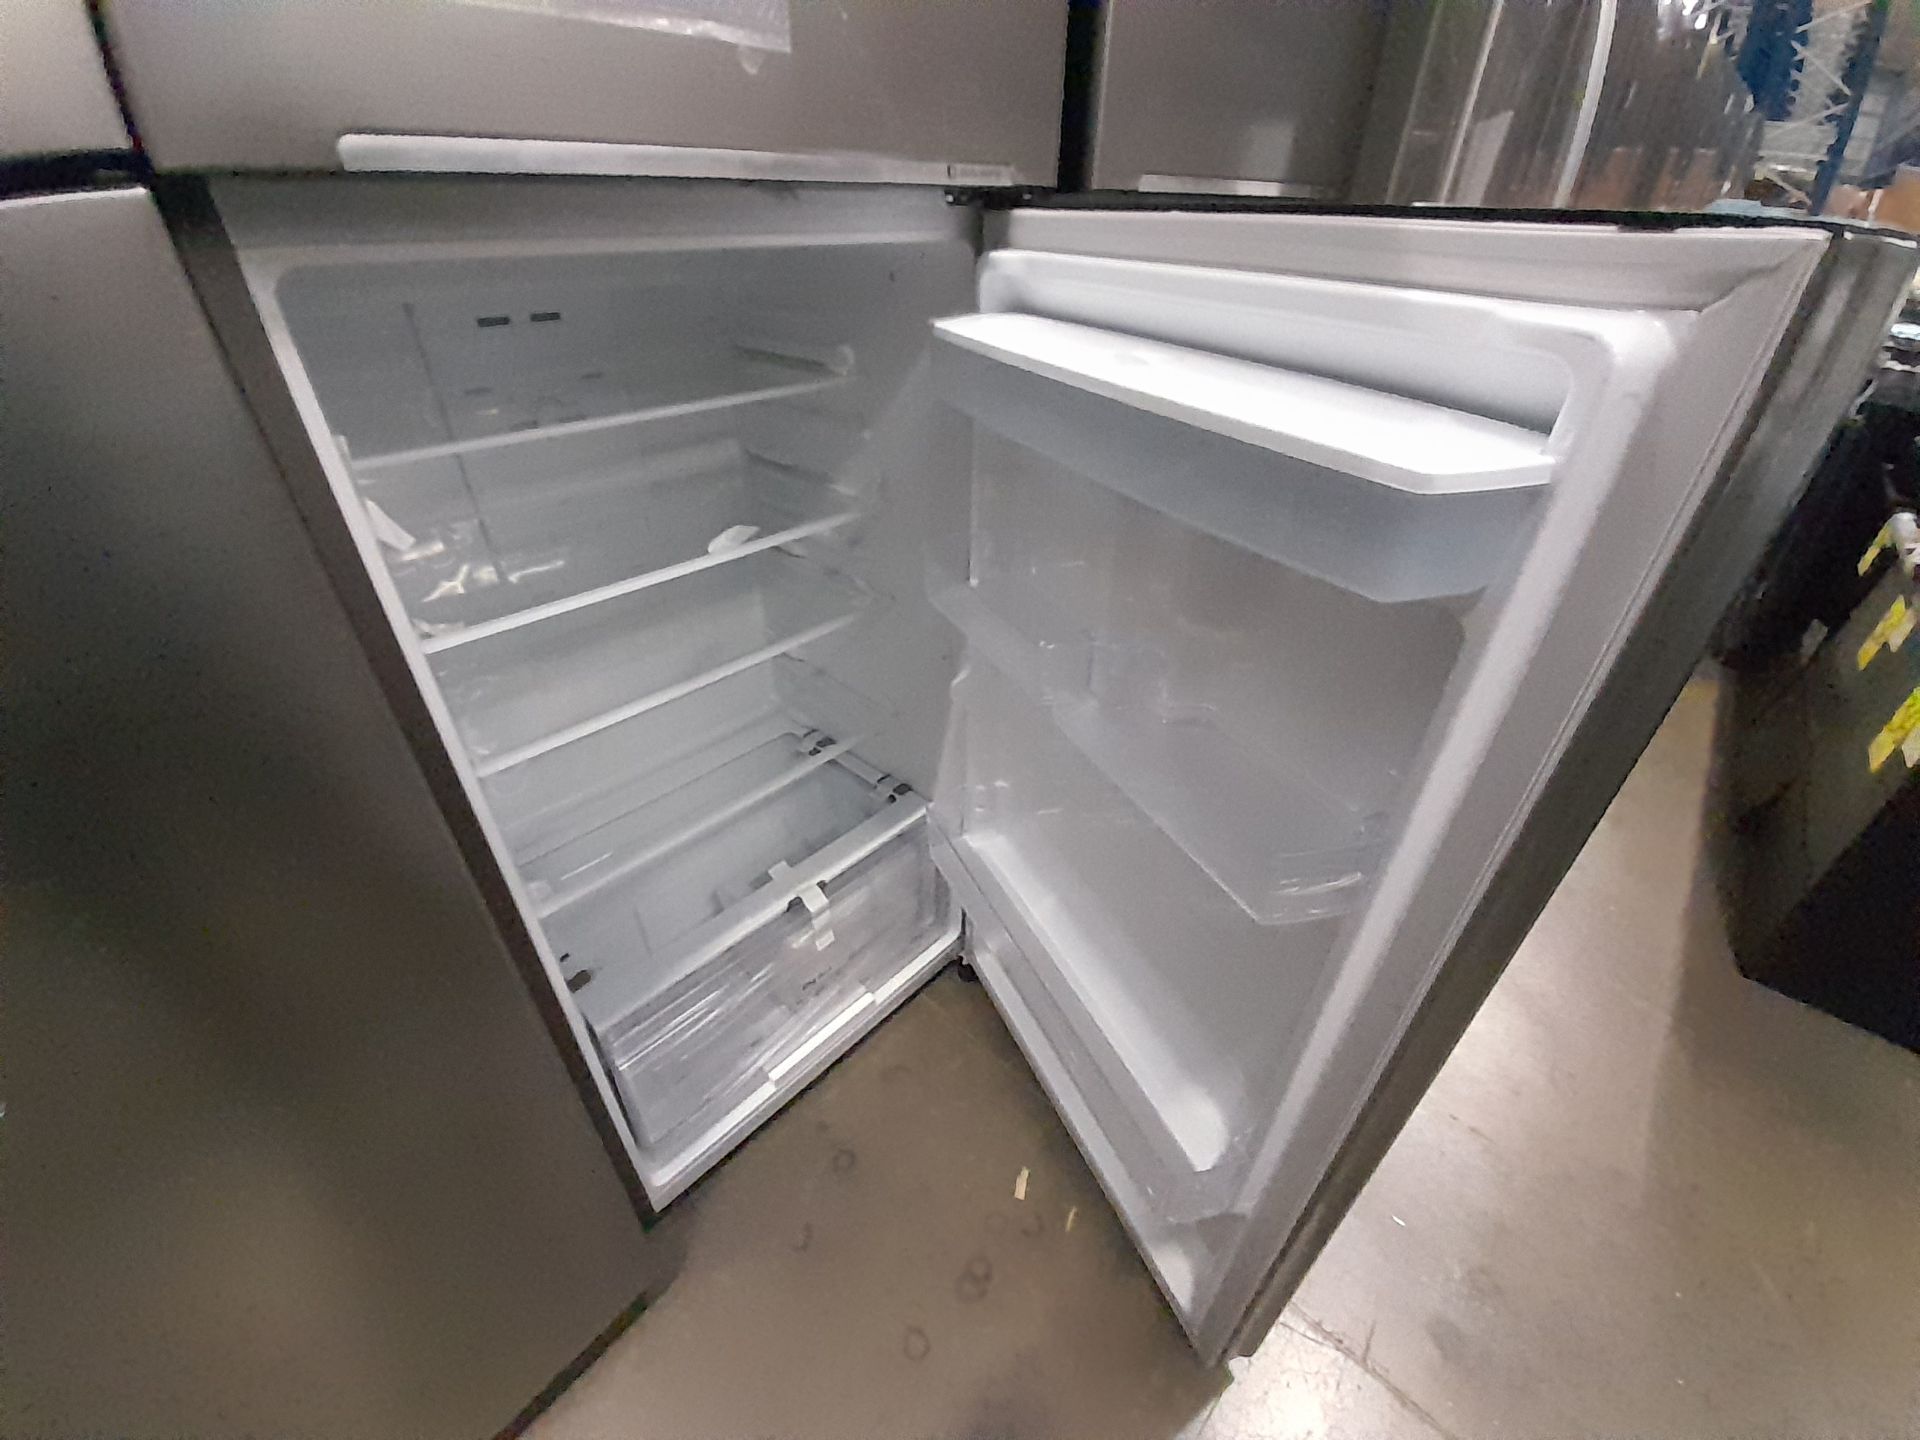 Lote de 2 refrigeradores contiene: 1 refrigerador Marca SAMSUNG, Modelo RT38A57IJS9, Serie 01144F, - Image 7 of 8